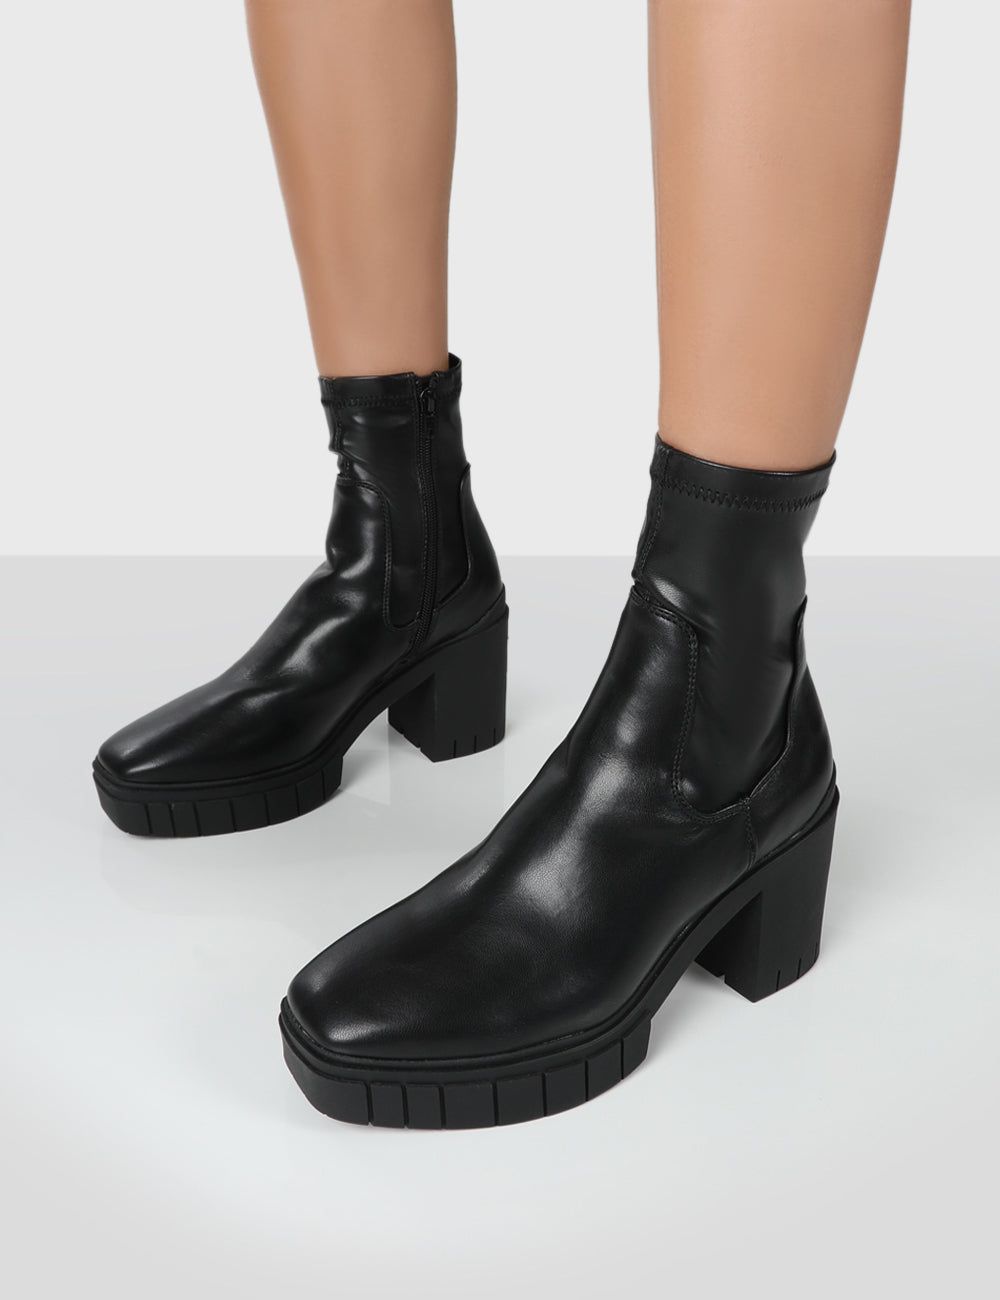 Carvela Black Suede Heeled Ankle Boots UK 6